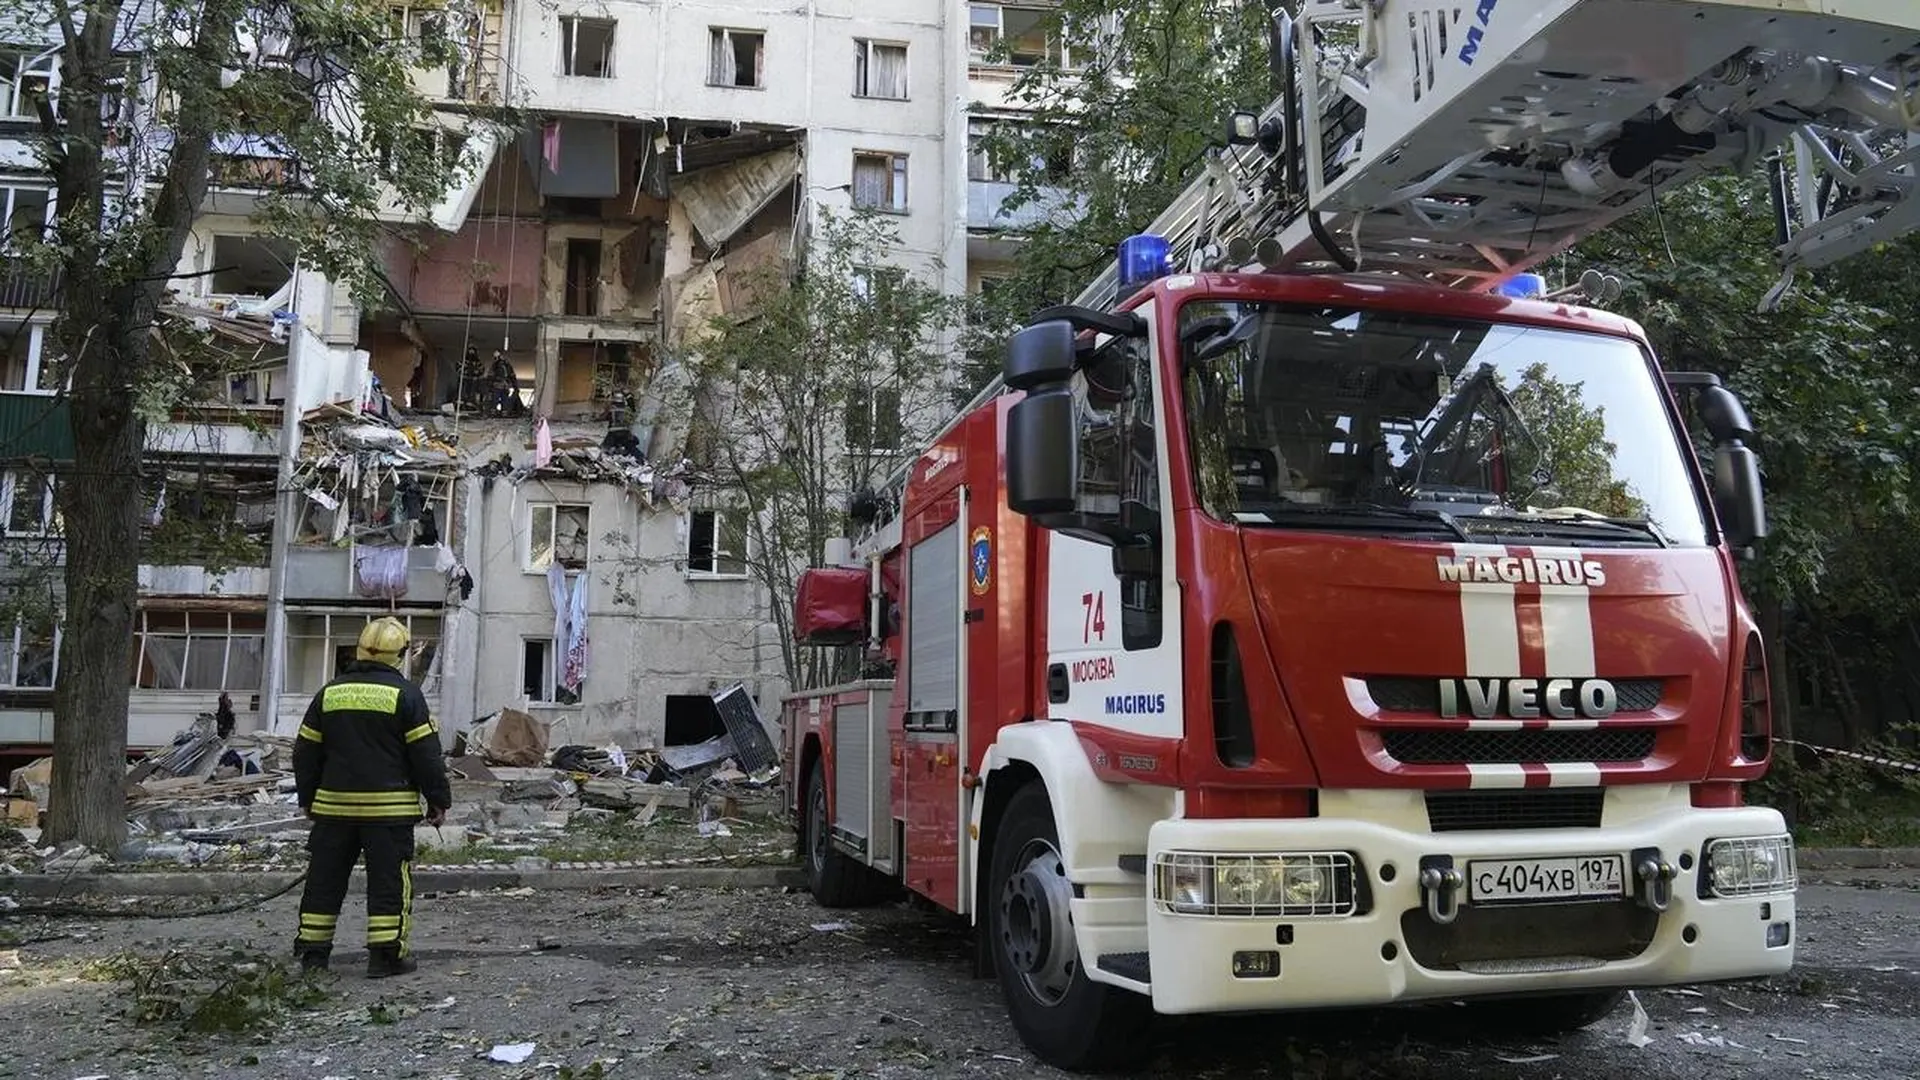 Пятилетняя девочка может все еще находиться под завалами в доме, пострадавшем от взрыва в Балашихе